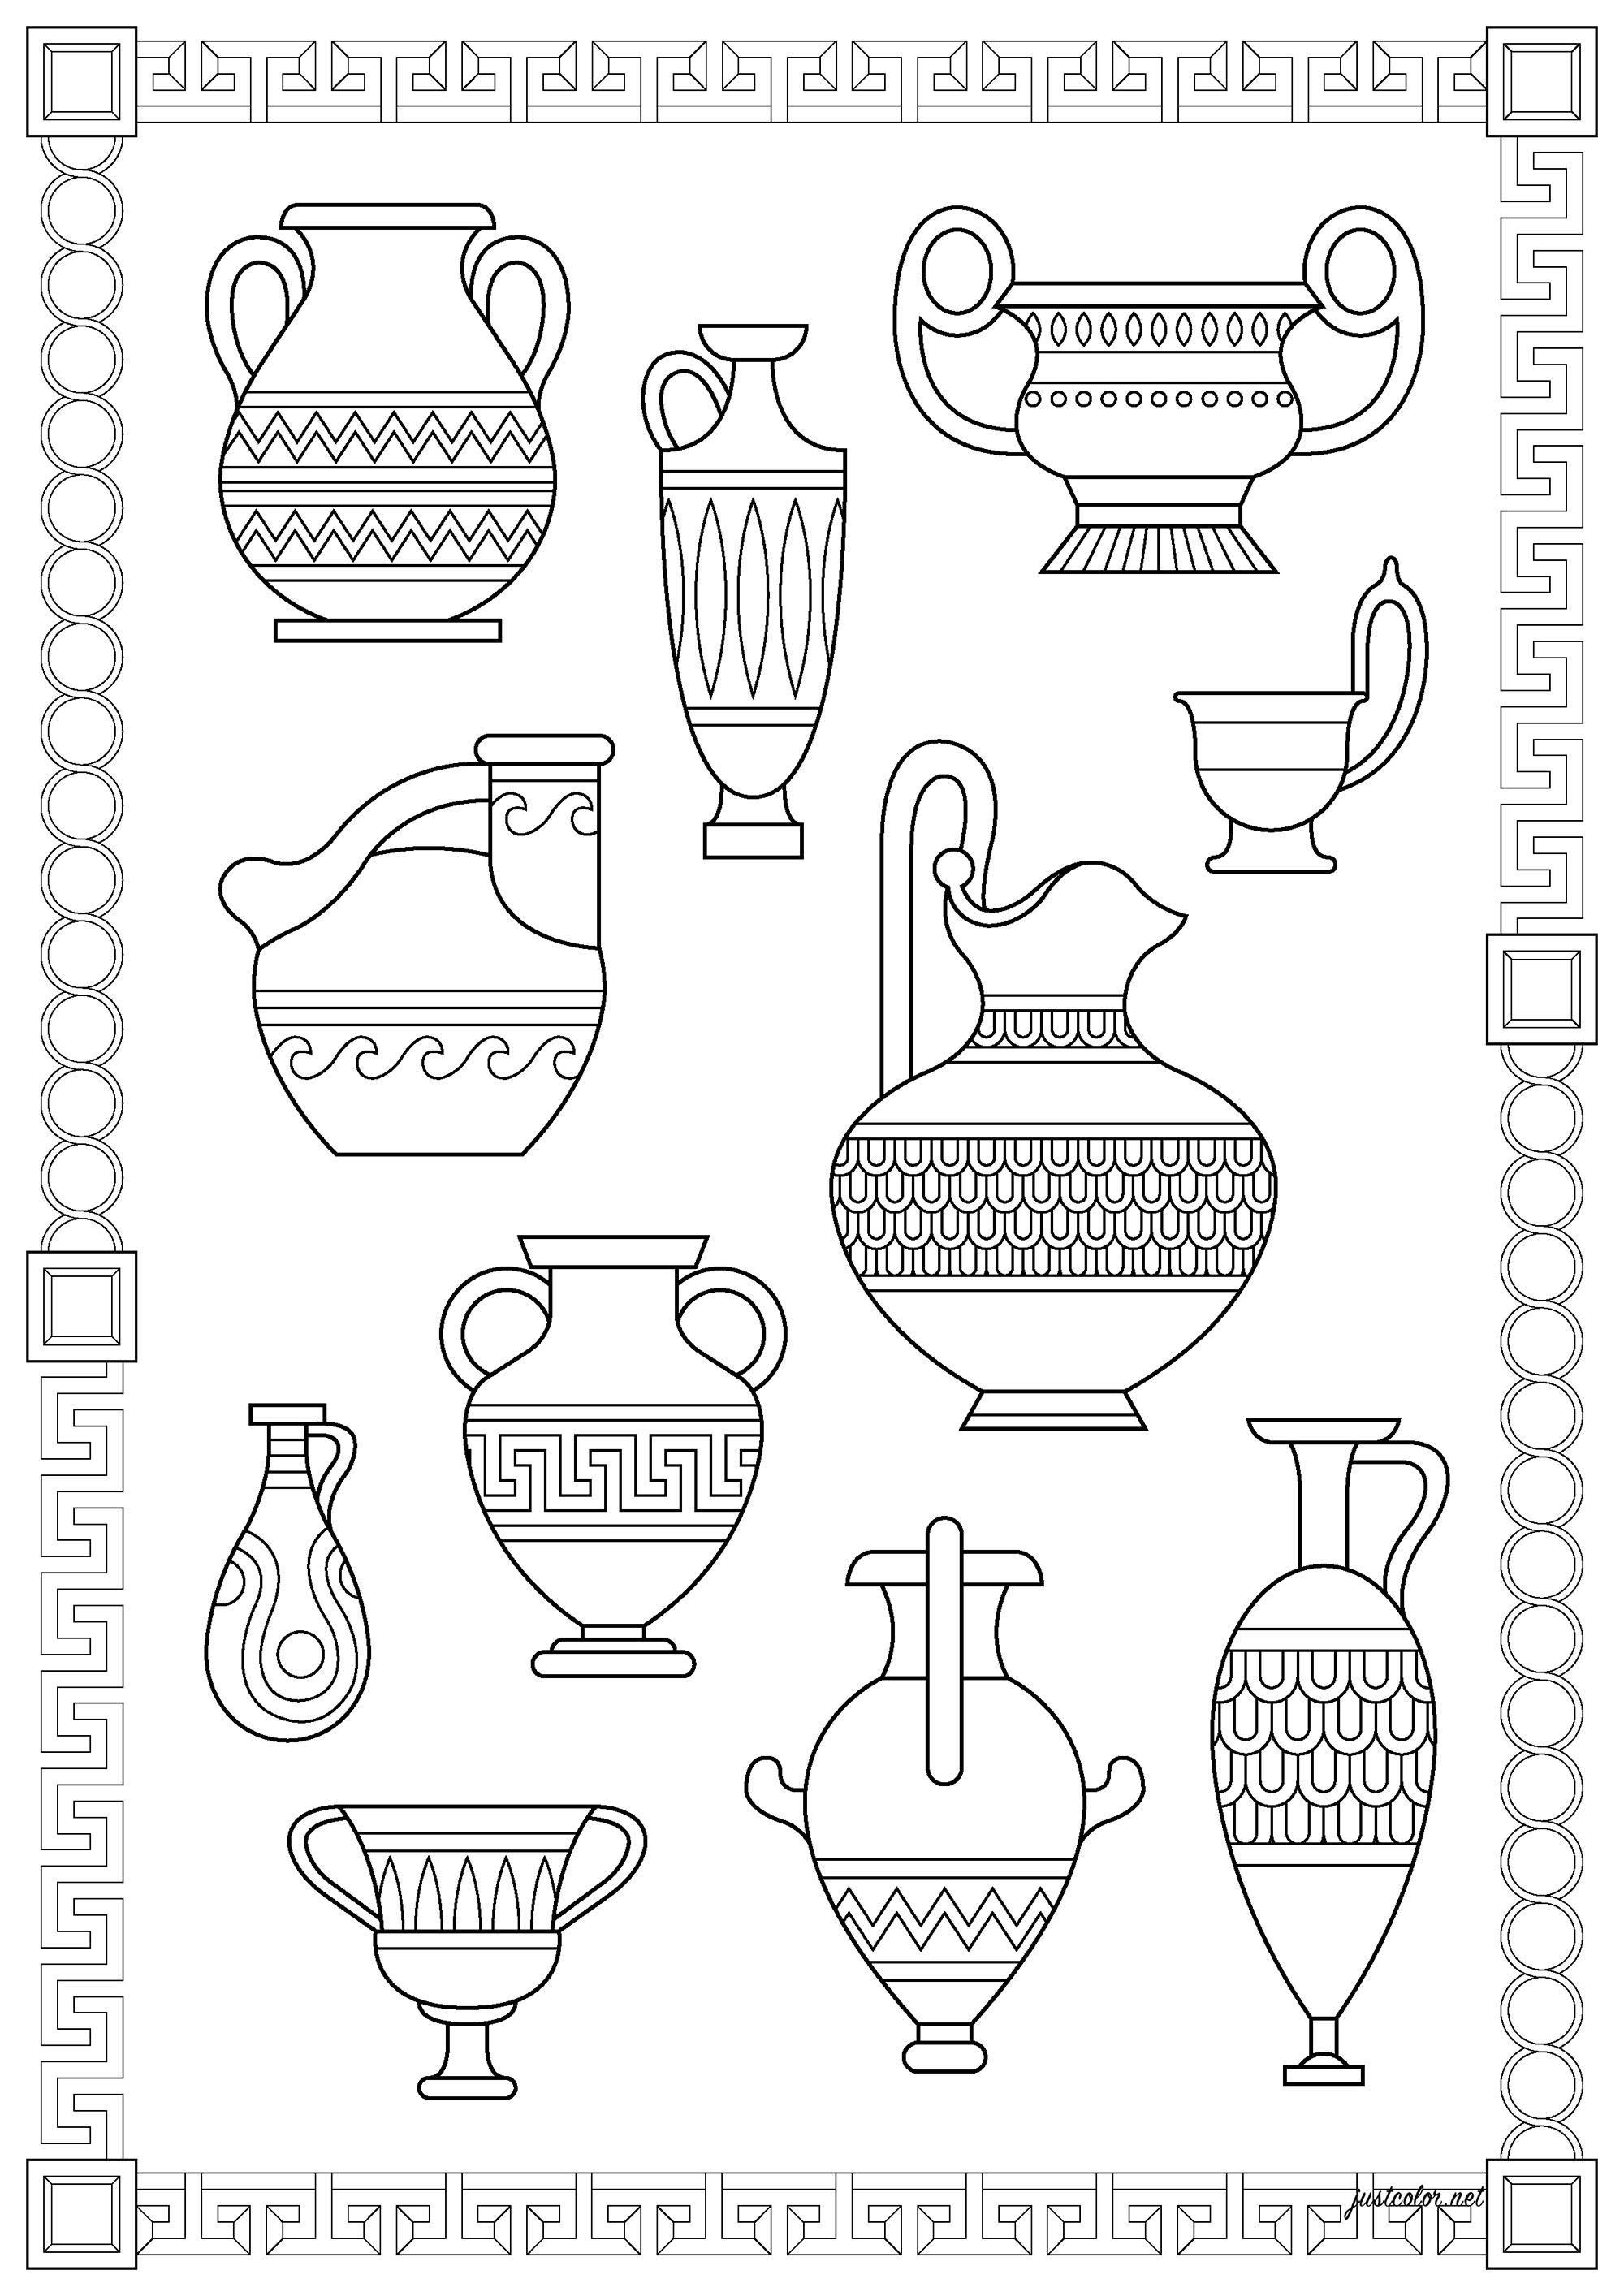 Inventário de diferentes vasos gregos. A cerâmica da Grécia antiga, de c. 1000 a c. 400 a.C, fornece algumas das mais antigas e diversas representações das crenças e práticas culturais dos gregos antigos e também algumas das formas de vaso mais distintas da antiguidade.